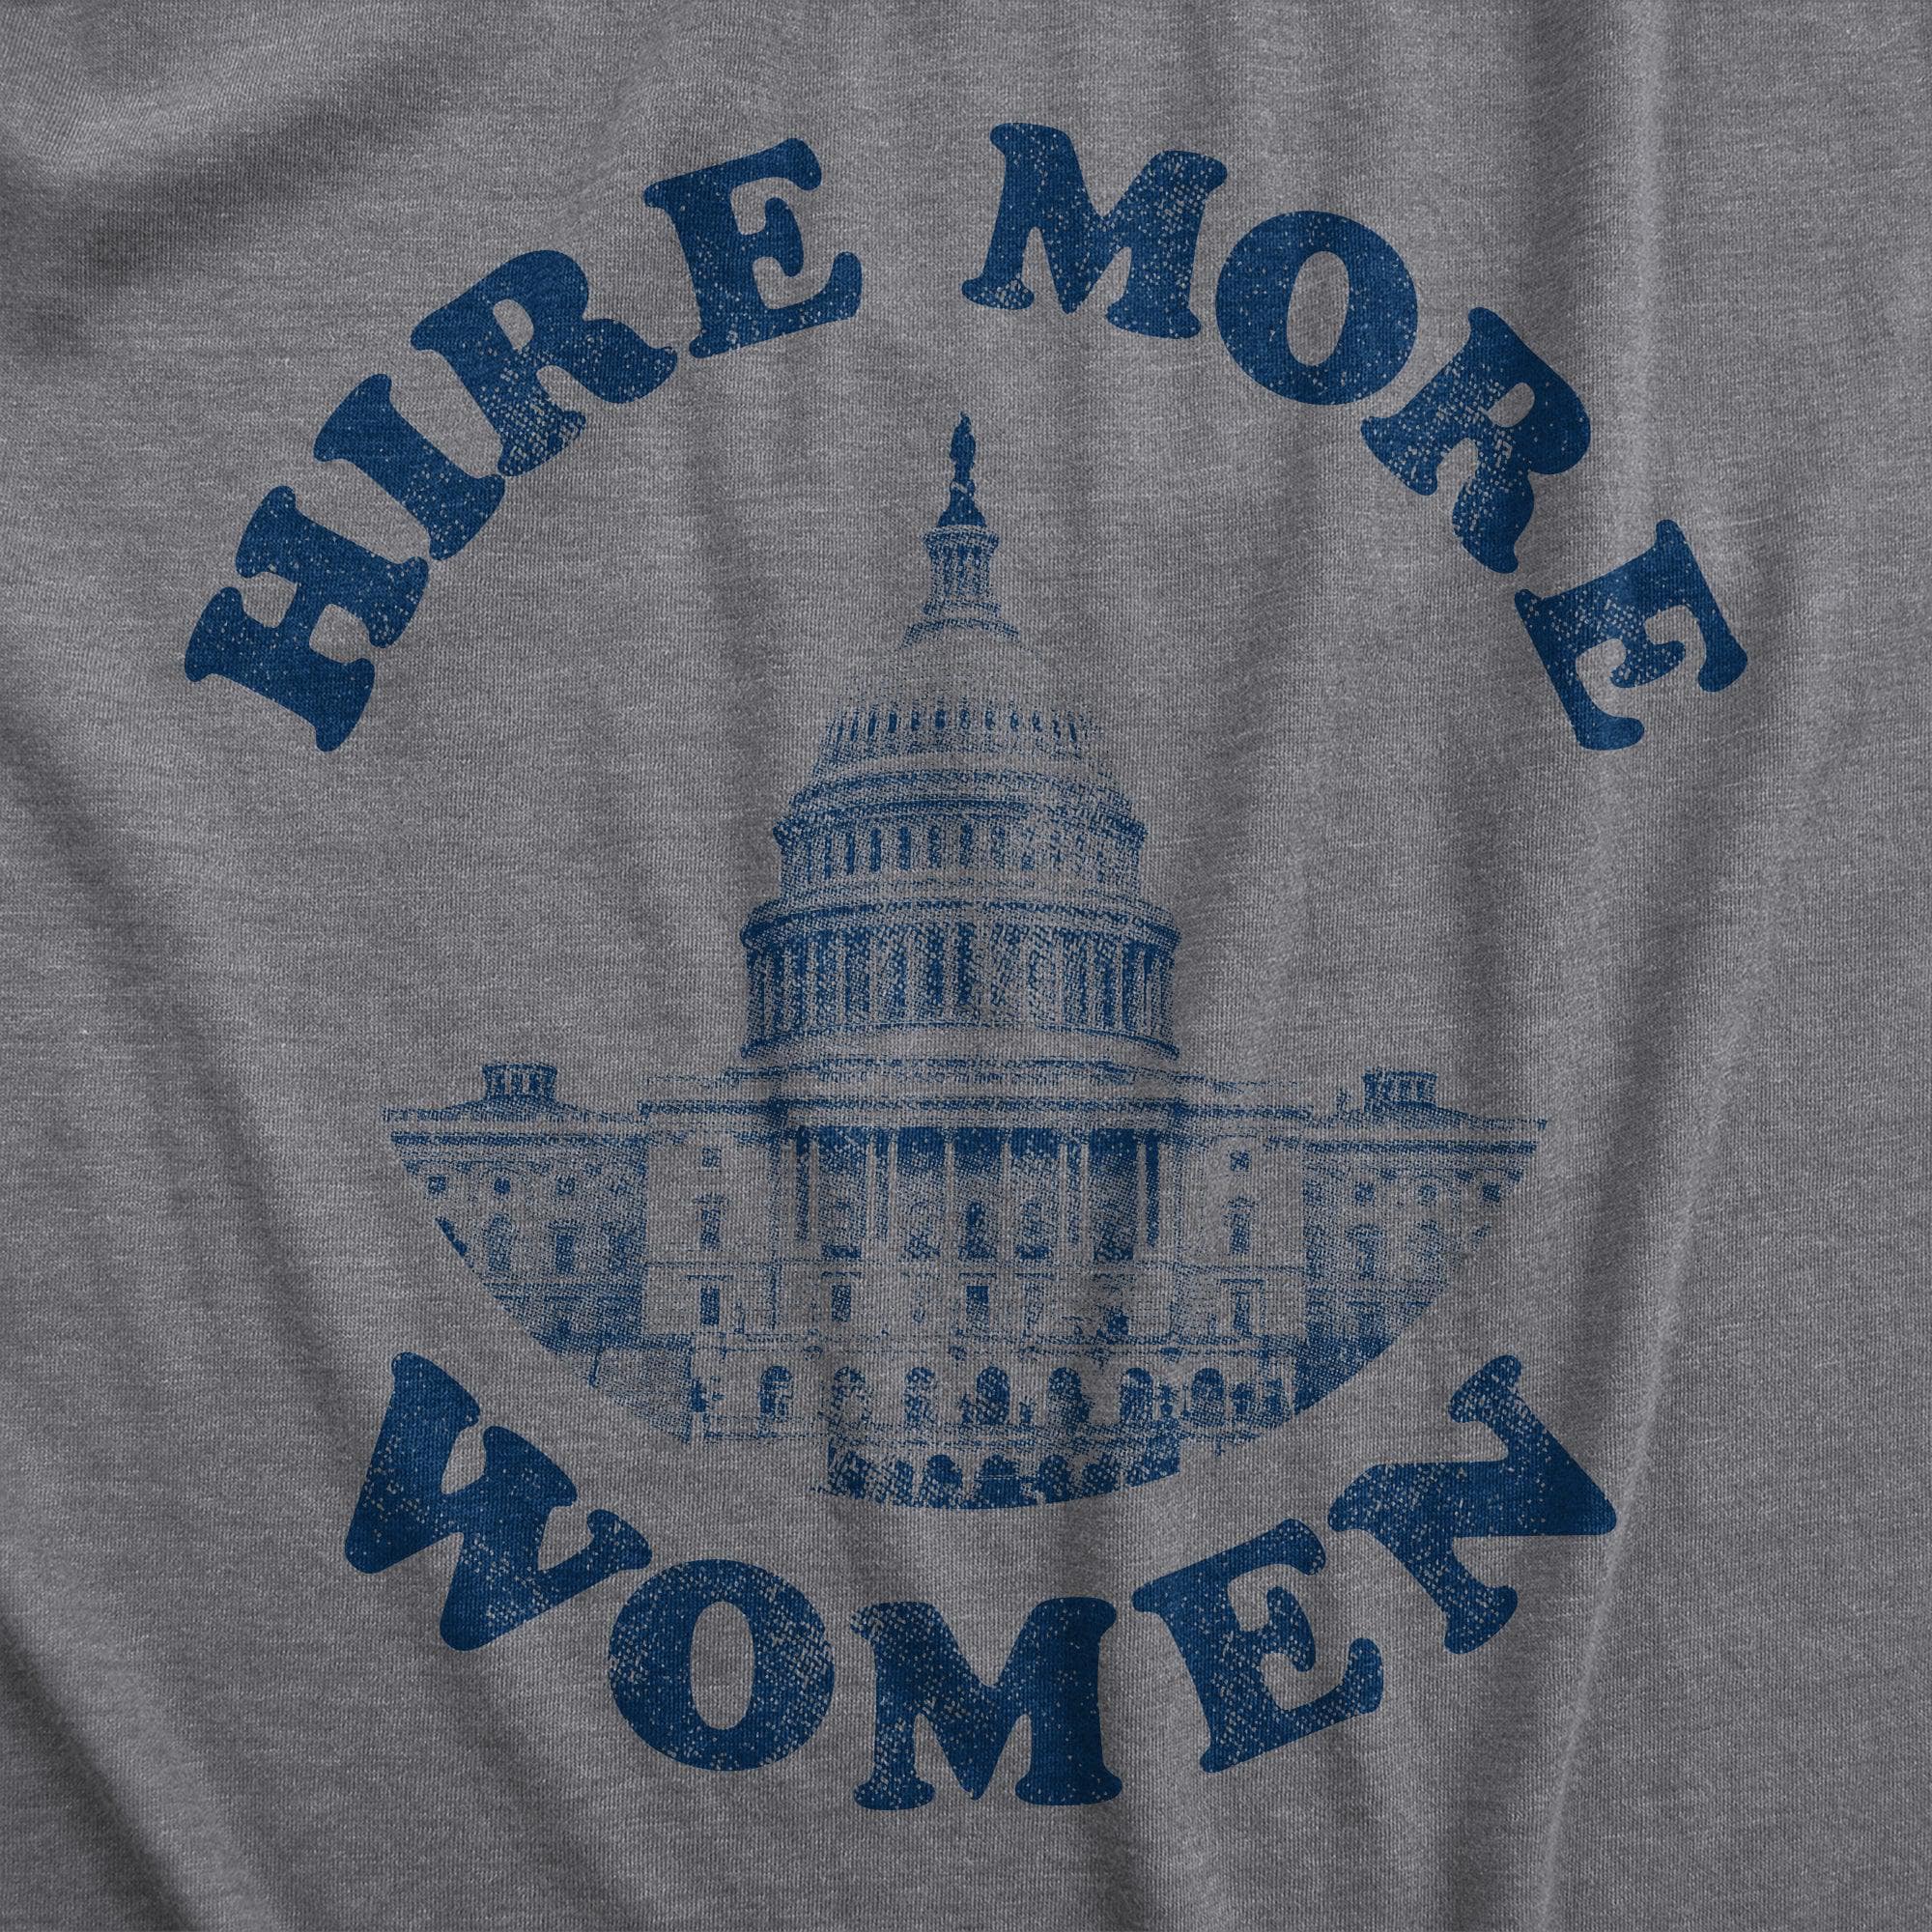 Hire More Women Women's Tank Top  -  Crazy Dog T-Shirts